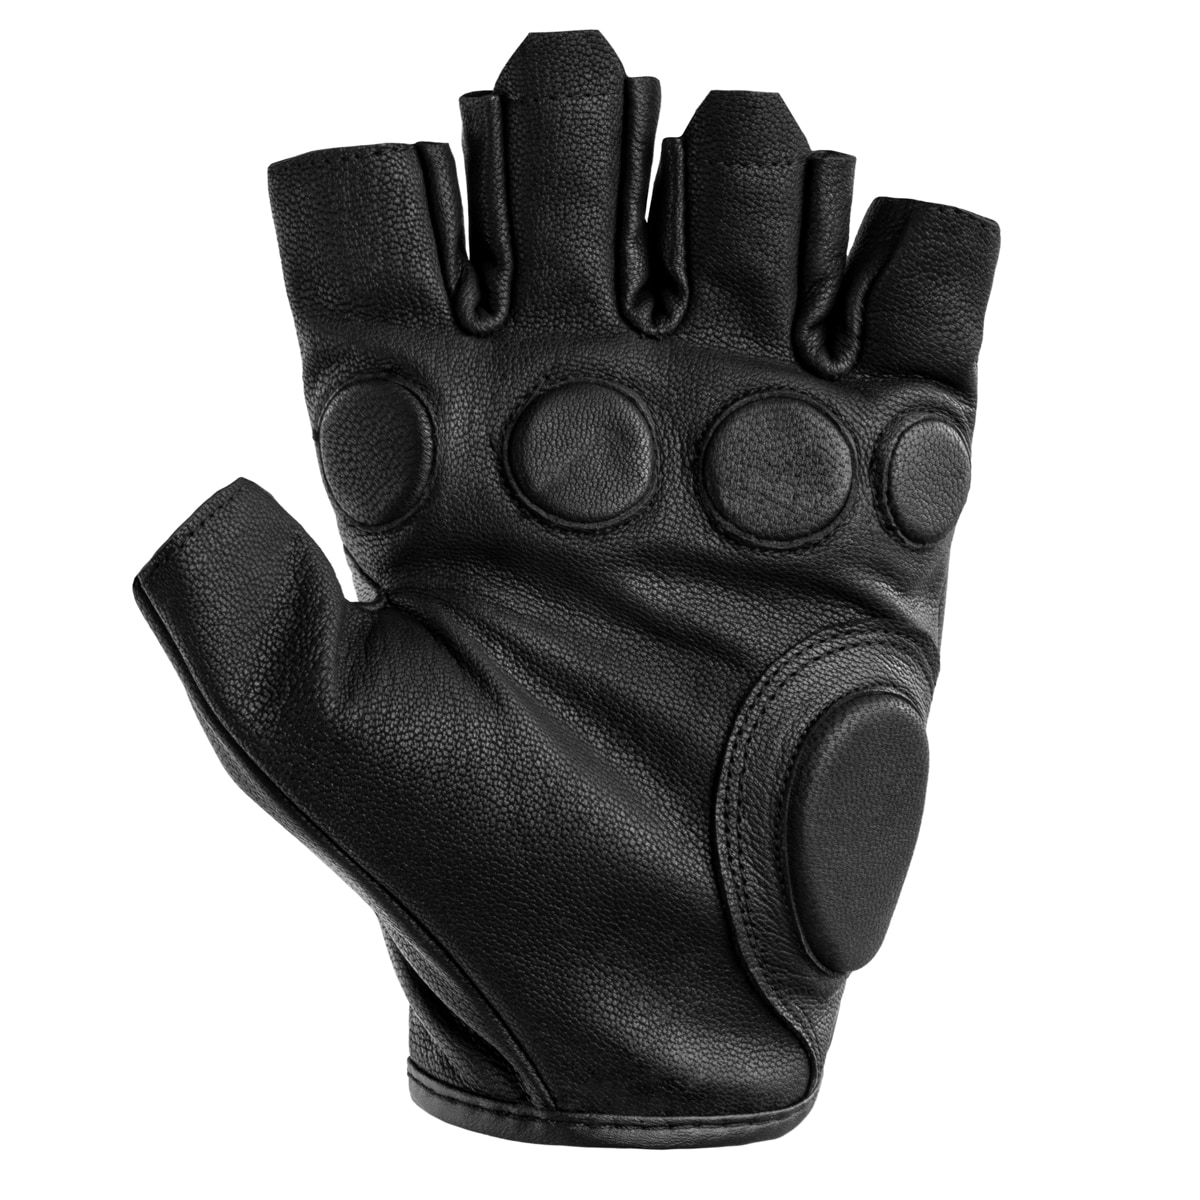 Rękawice taktyczne bez palców Mil-Tec Leather - Black